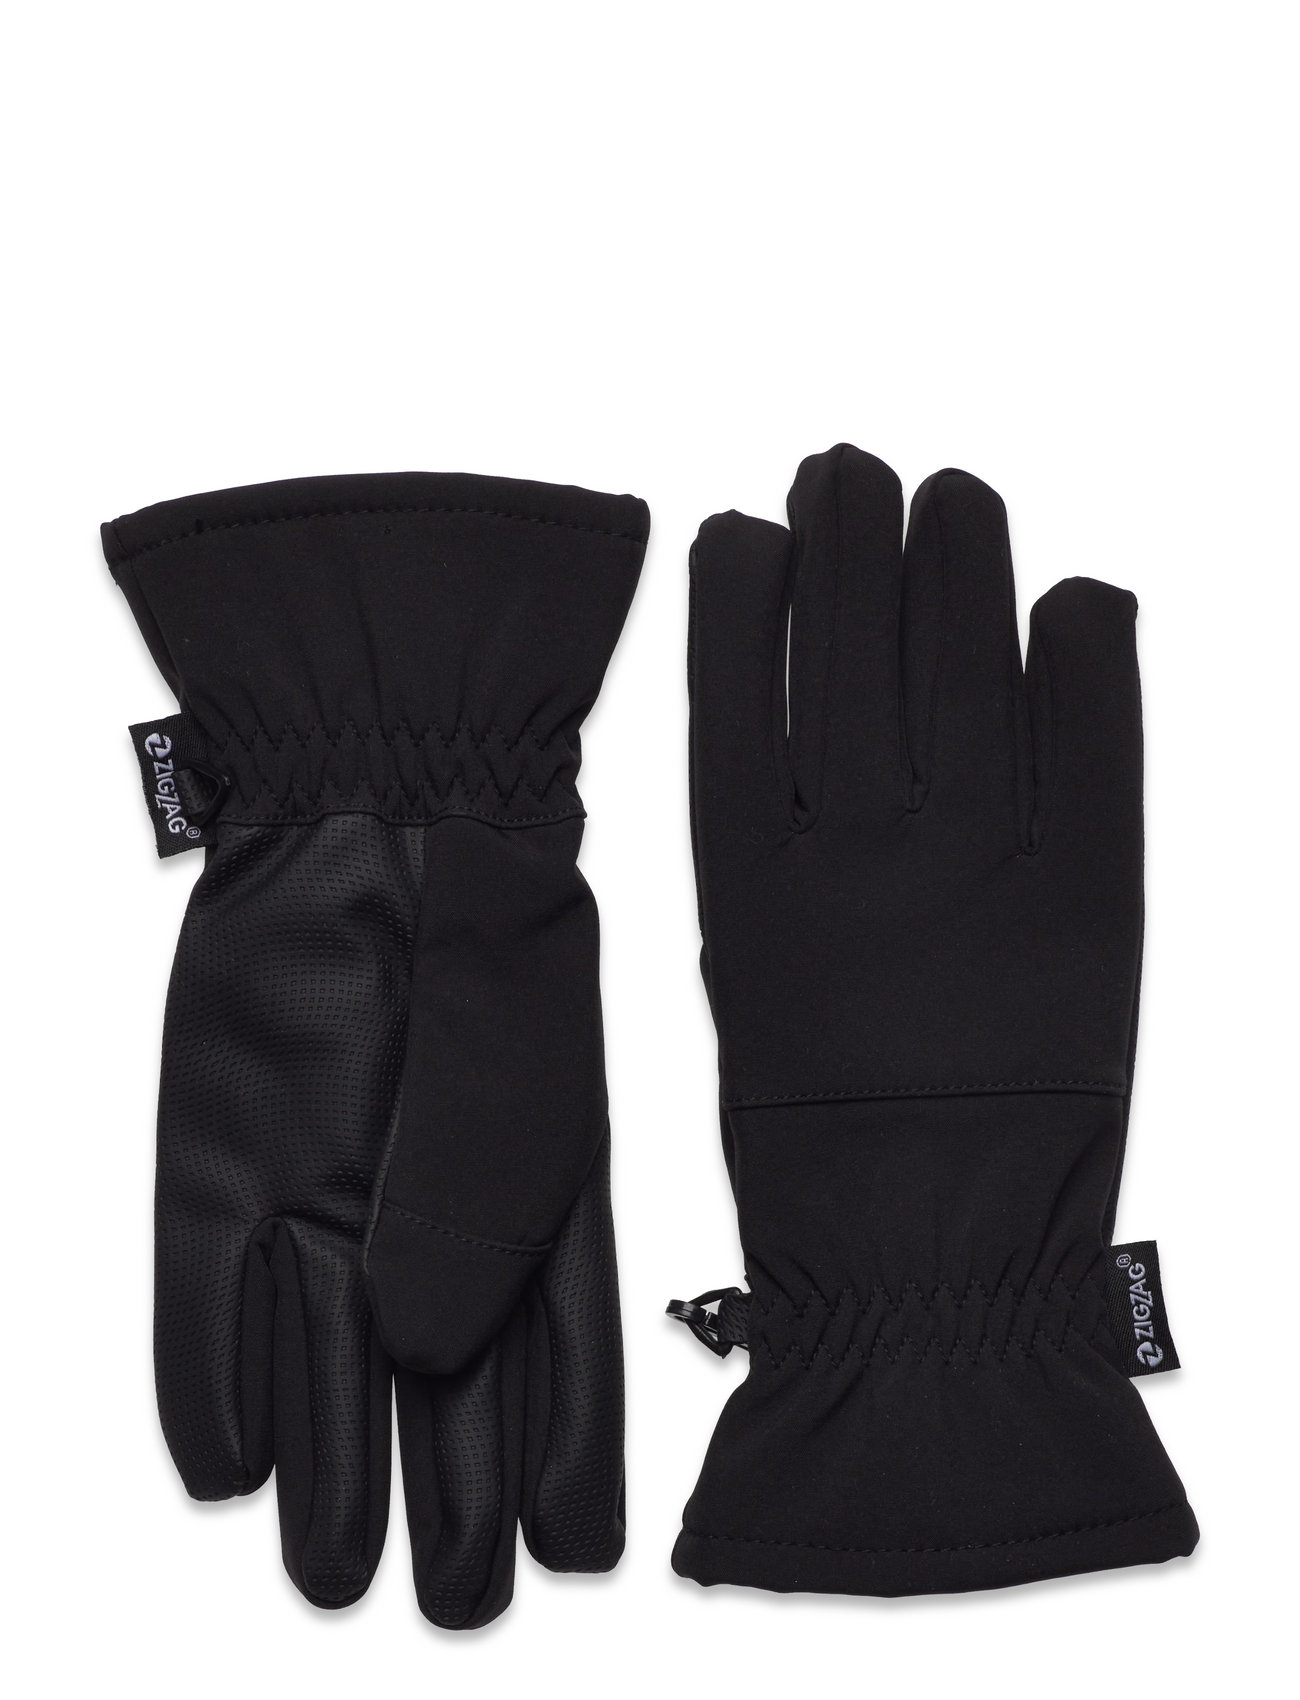 – Softshell ZigZag Booztlet Santiay bei handschuhe einkaufen – Glove